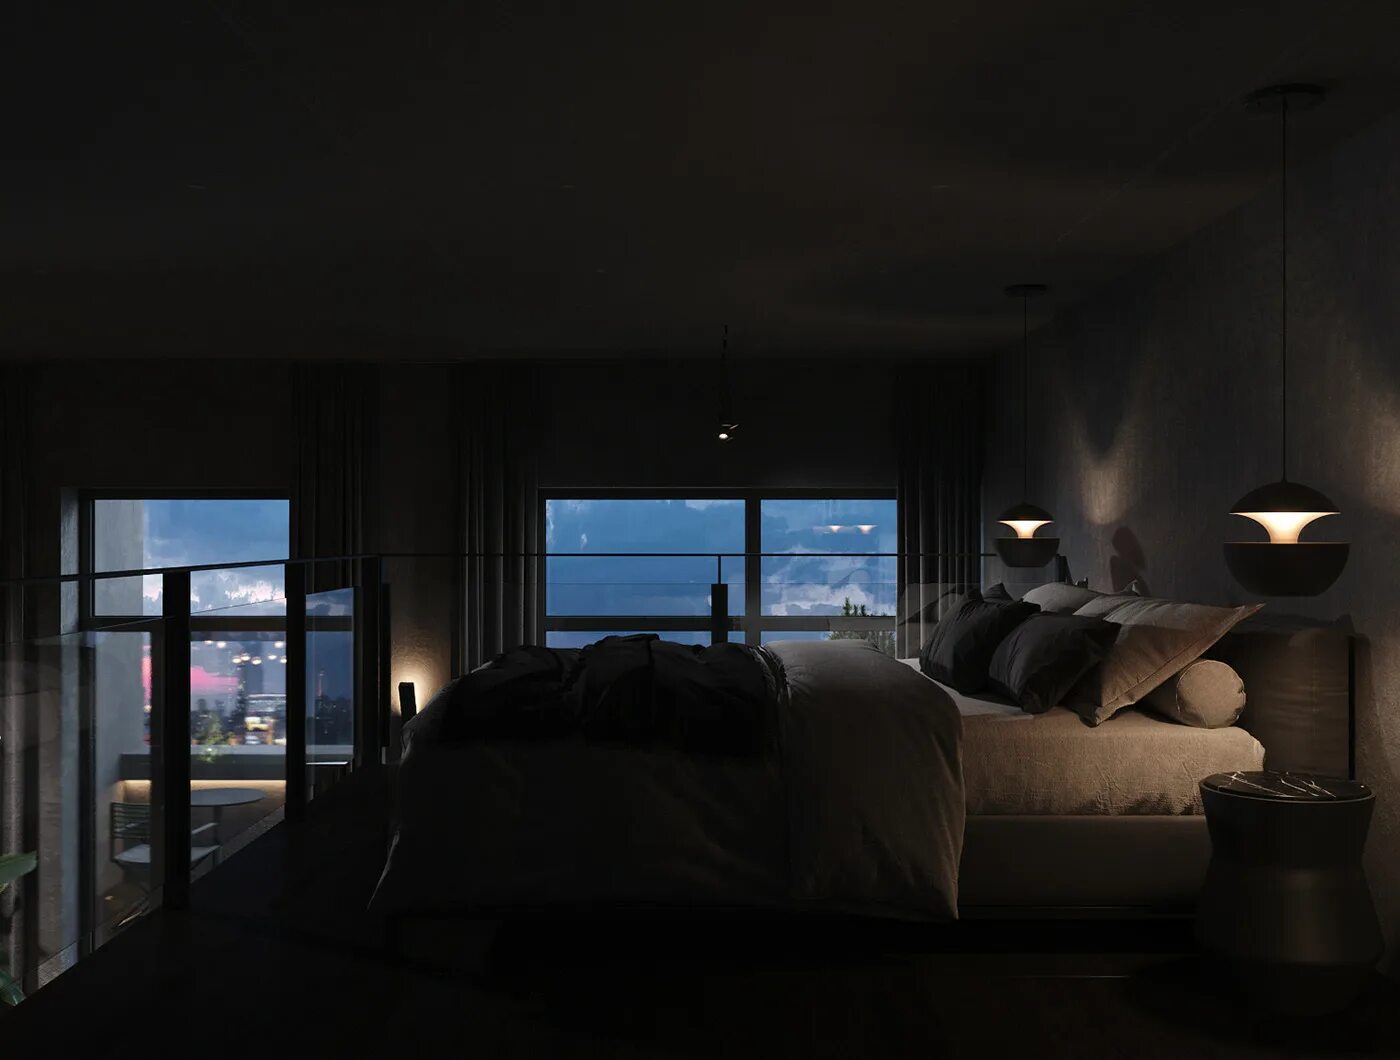 Комната с окном ночью. Темный интерьер. Спальня с панорамными окнами. Спальня с панорамными окнами ночь.